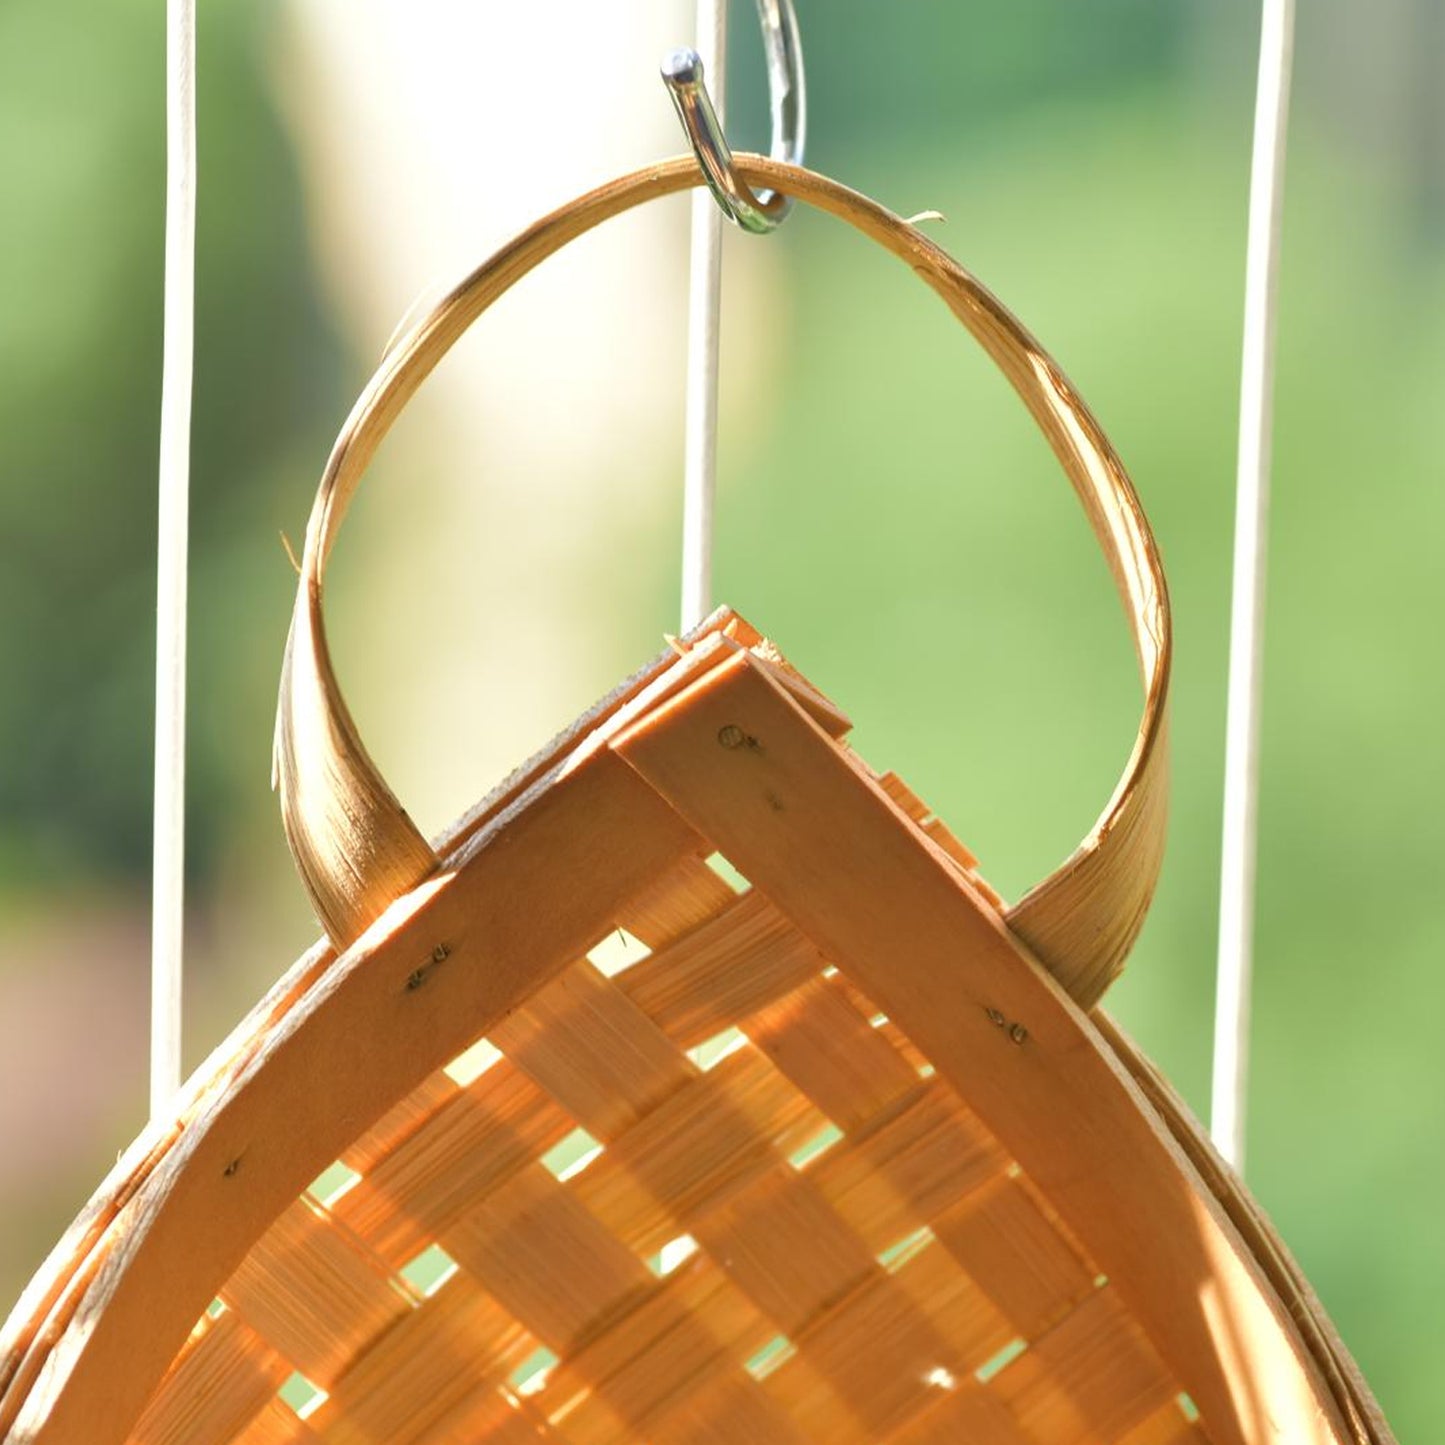 Bamboo Wicker Hanging Basket